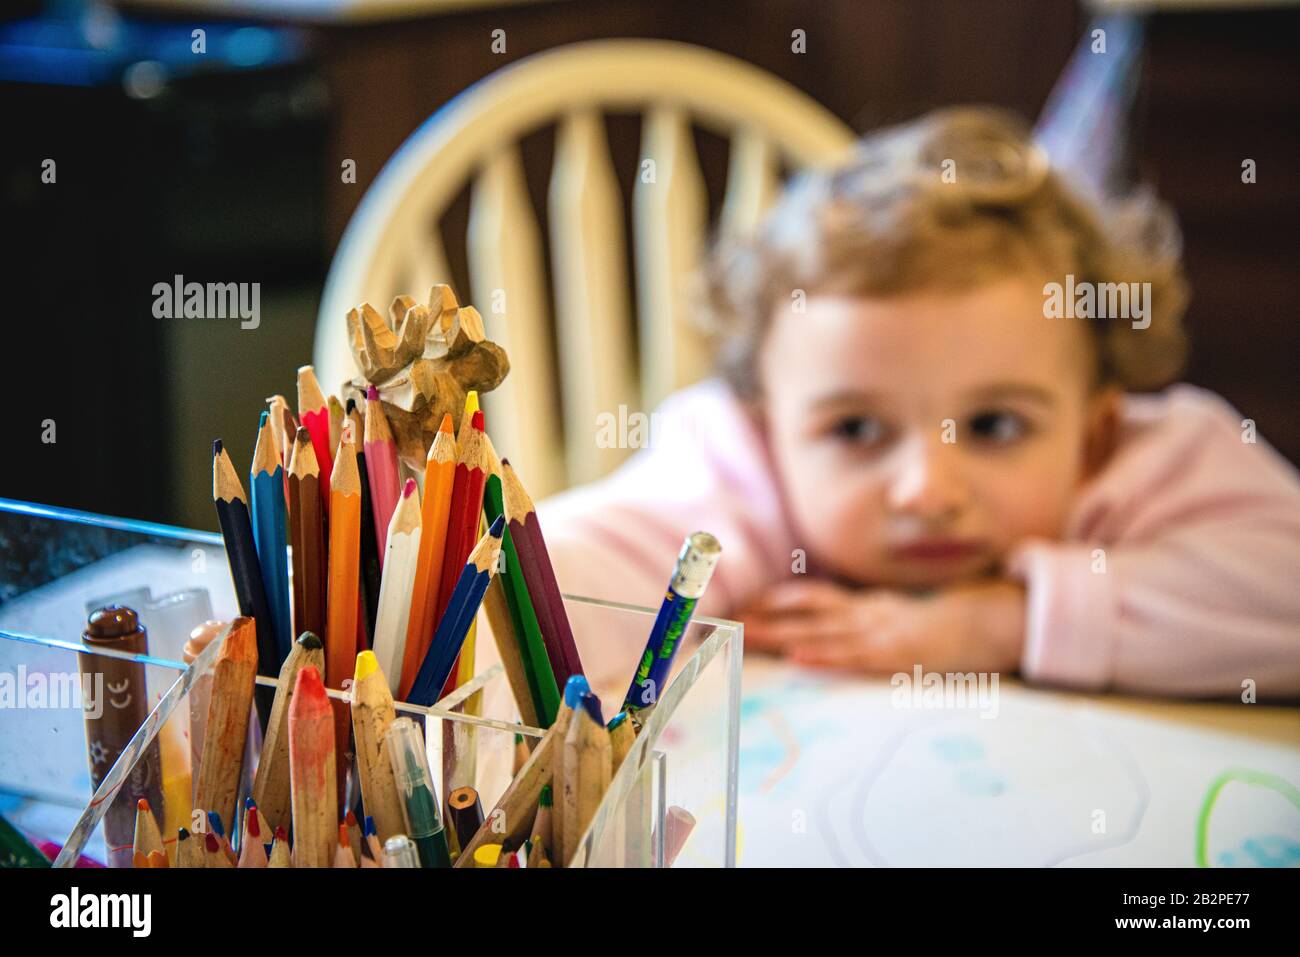 primo piano di plastica scatola a forma di supporto, con matite multicolore e pastelli, giovane ragazza guardando annoiato in background, fuori fuoco. Foto Stock